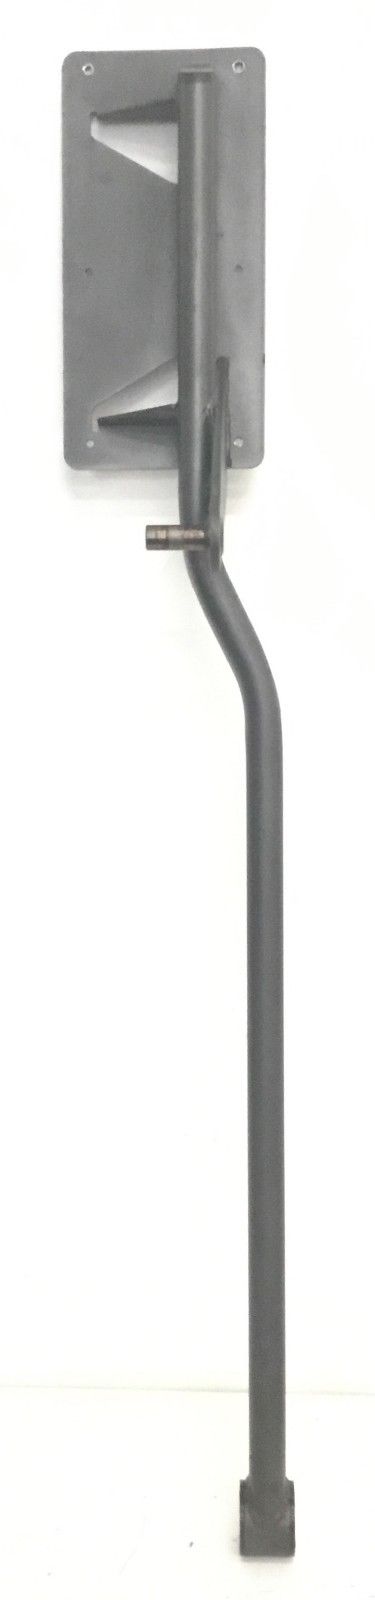 Epic HealthRider NordicTrack Elliptical Right Pedal Arm 291015 - fitnesspartsrepair